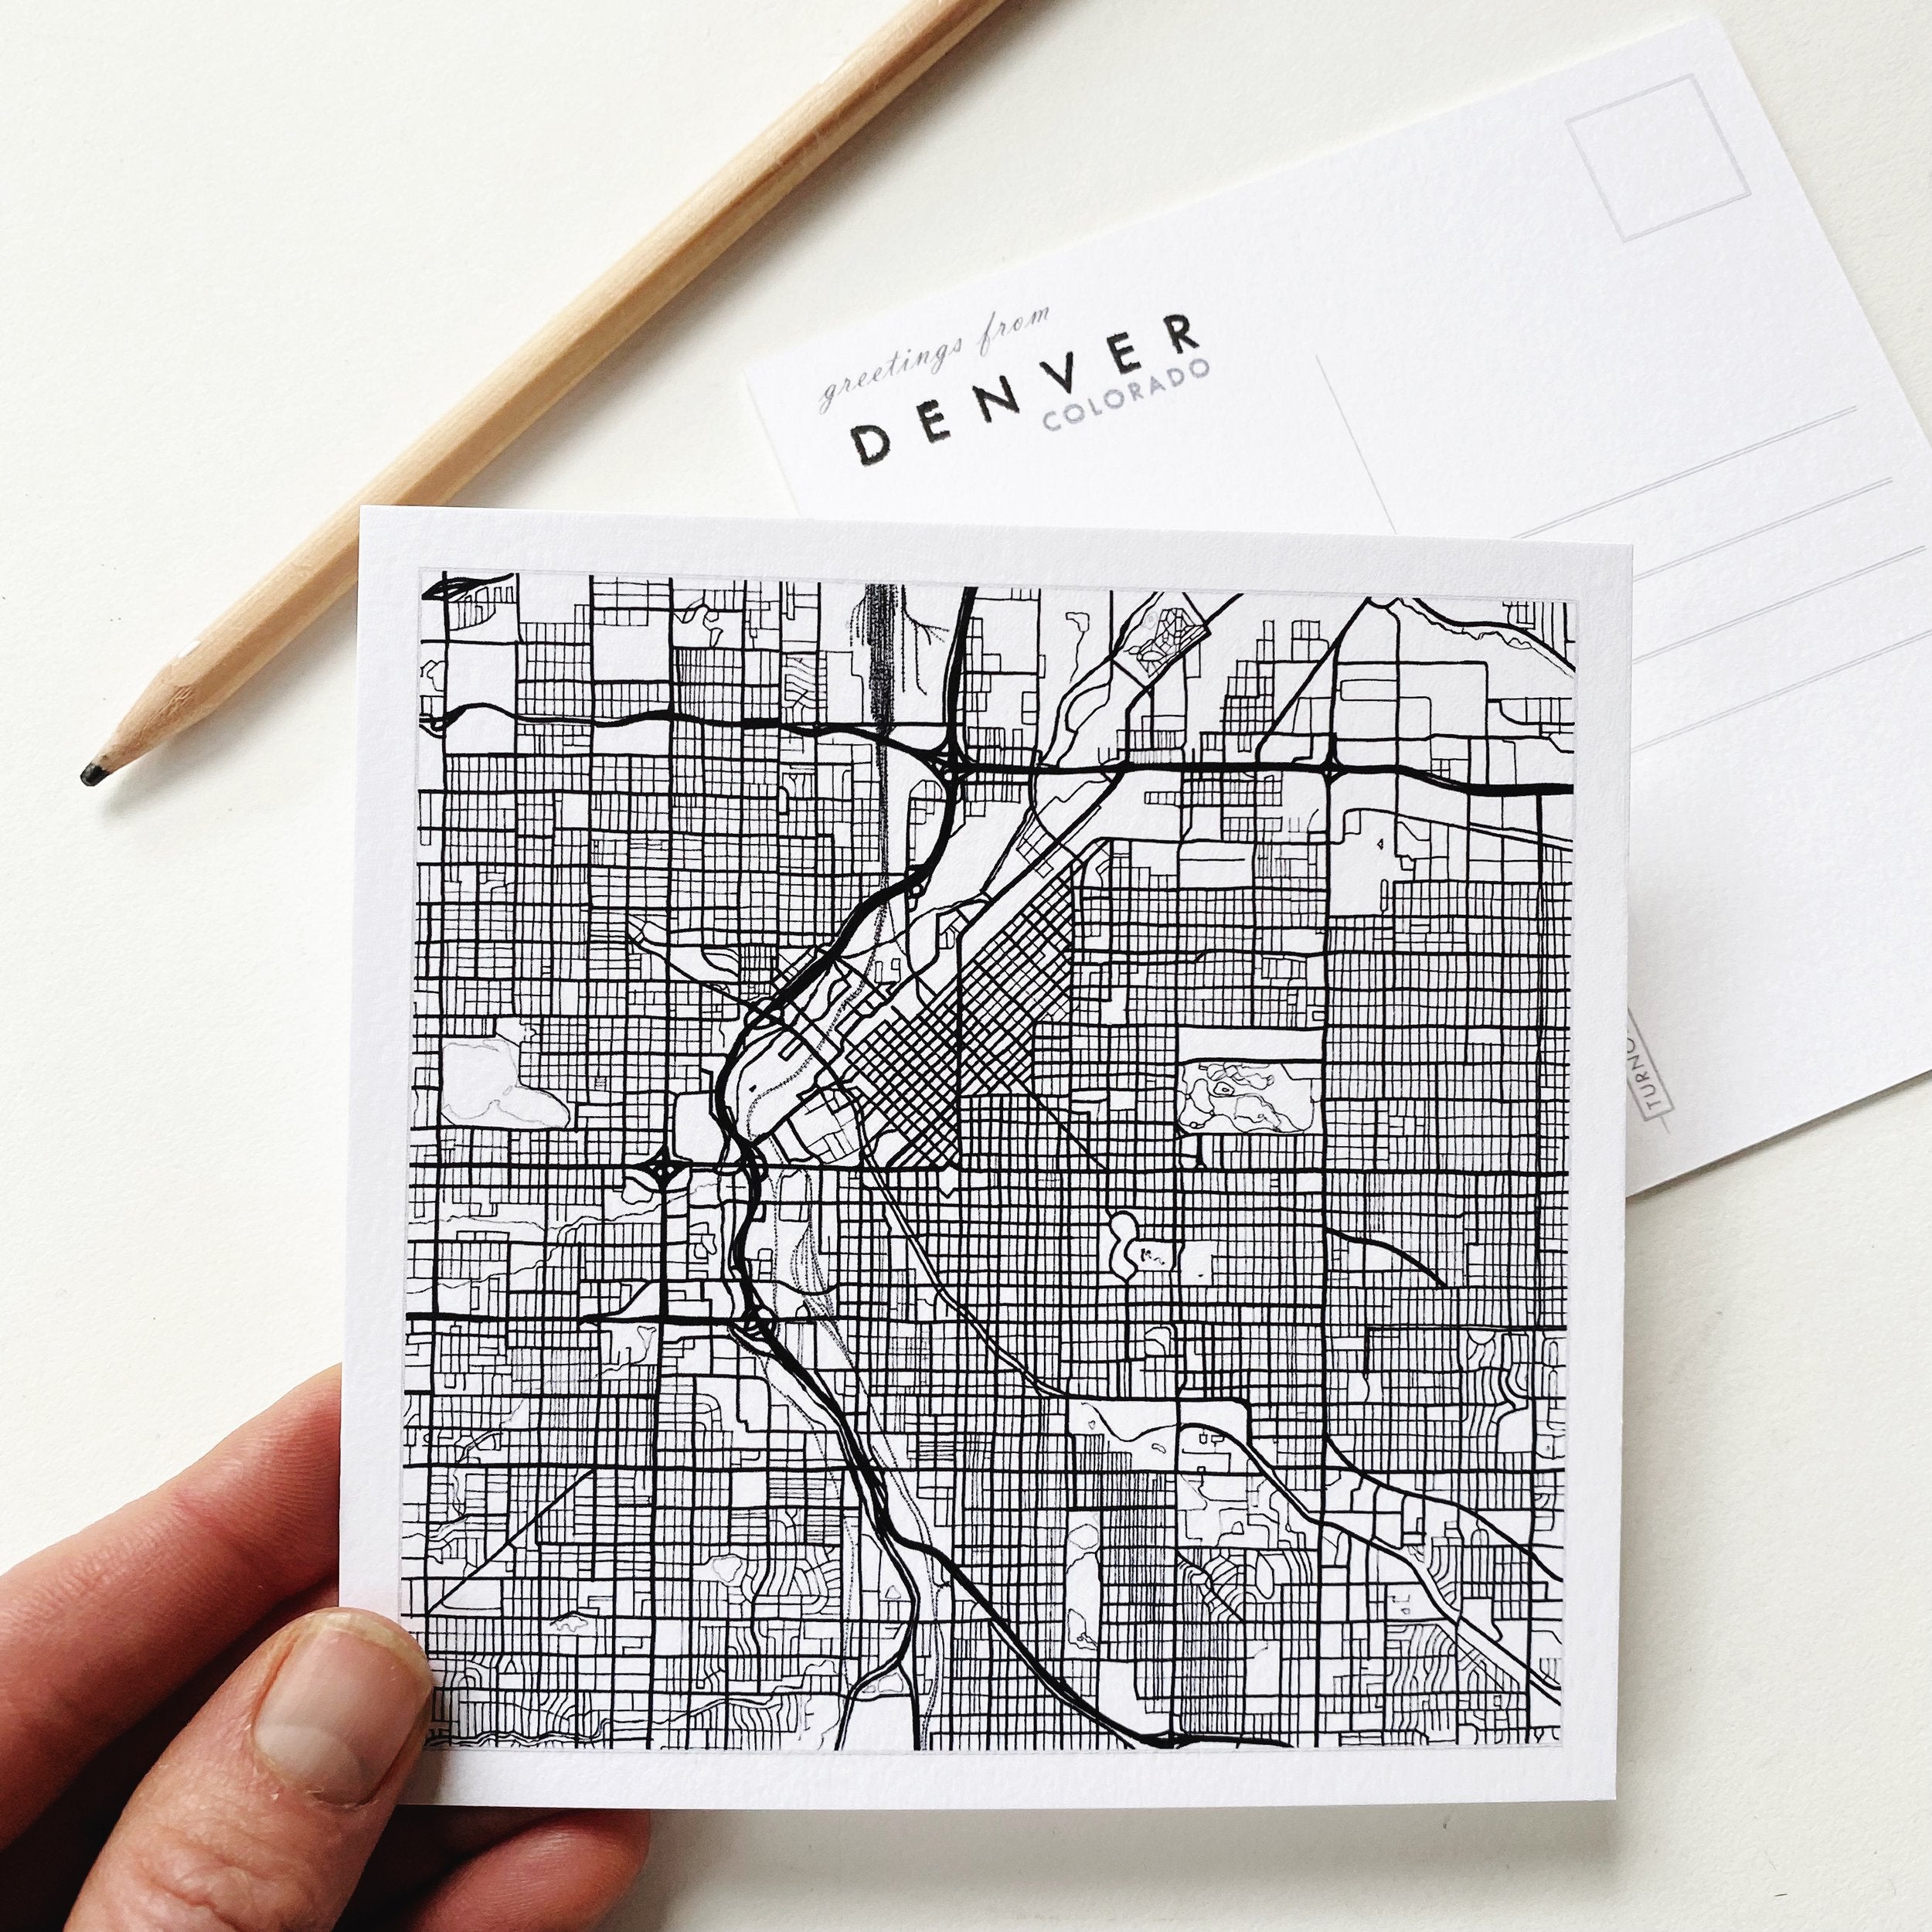 DENVER Colorado City Lines Map Postcard